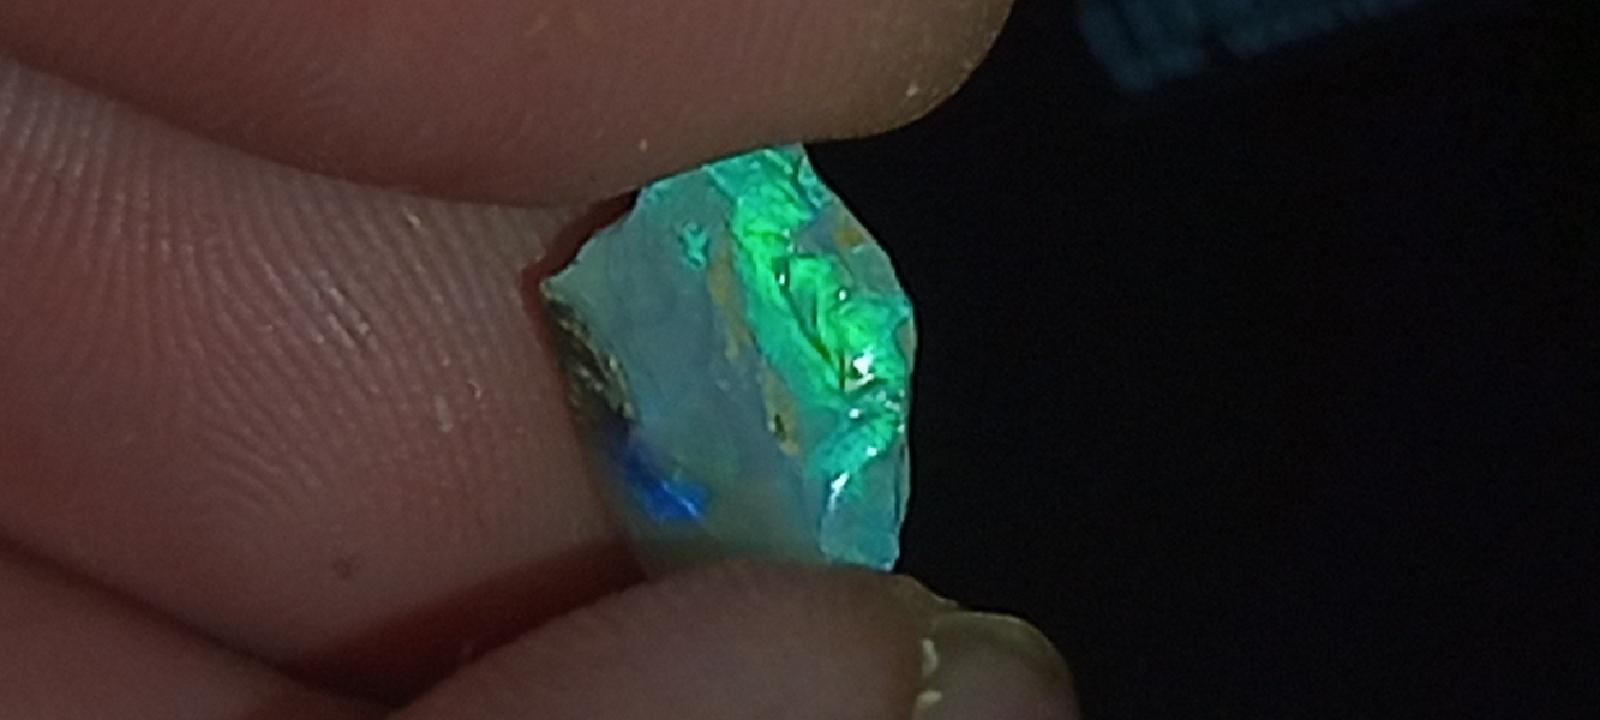 Dubnicky Drahy Opal VR1 - Hyalit zeleno modry , cca 4 - 5ct . - Obrázok č. 1